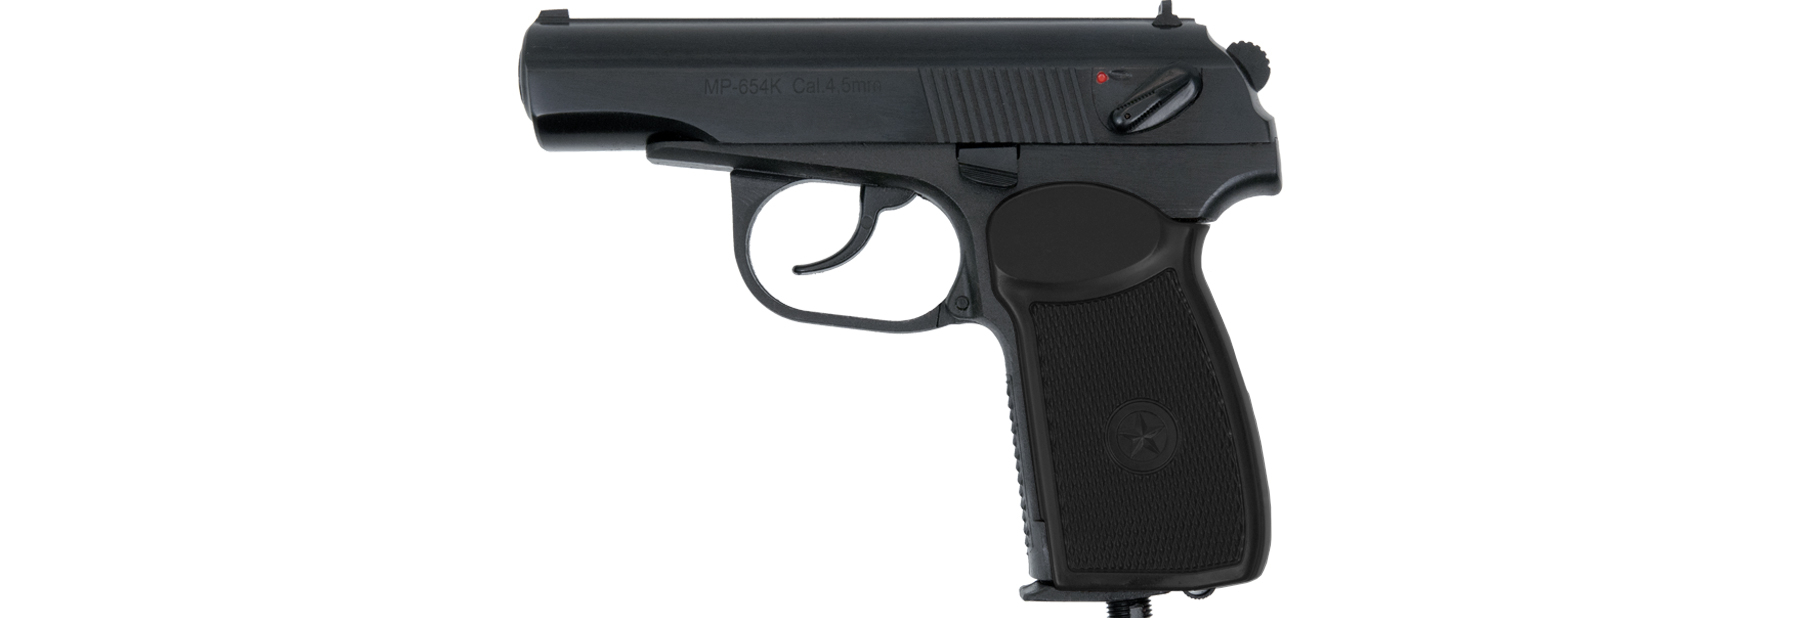 Пистолет МР-654К газобаллонный с обновленной рукояткой (черный).